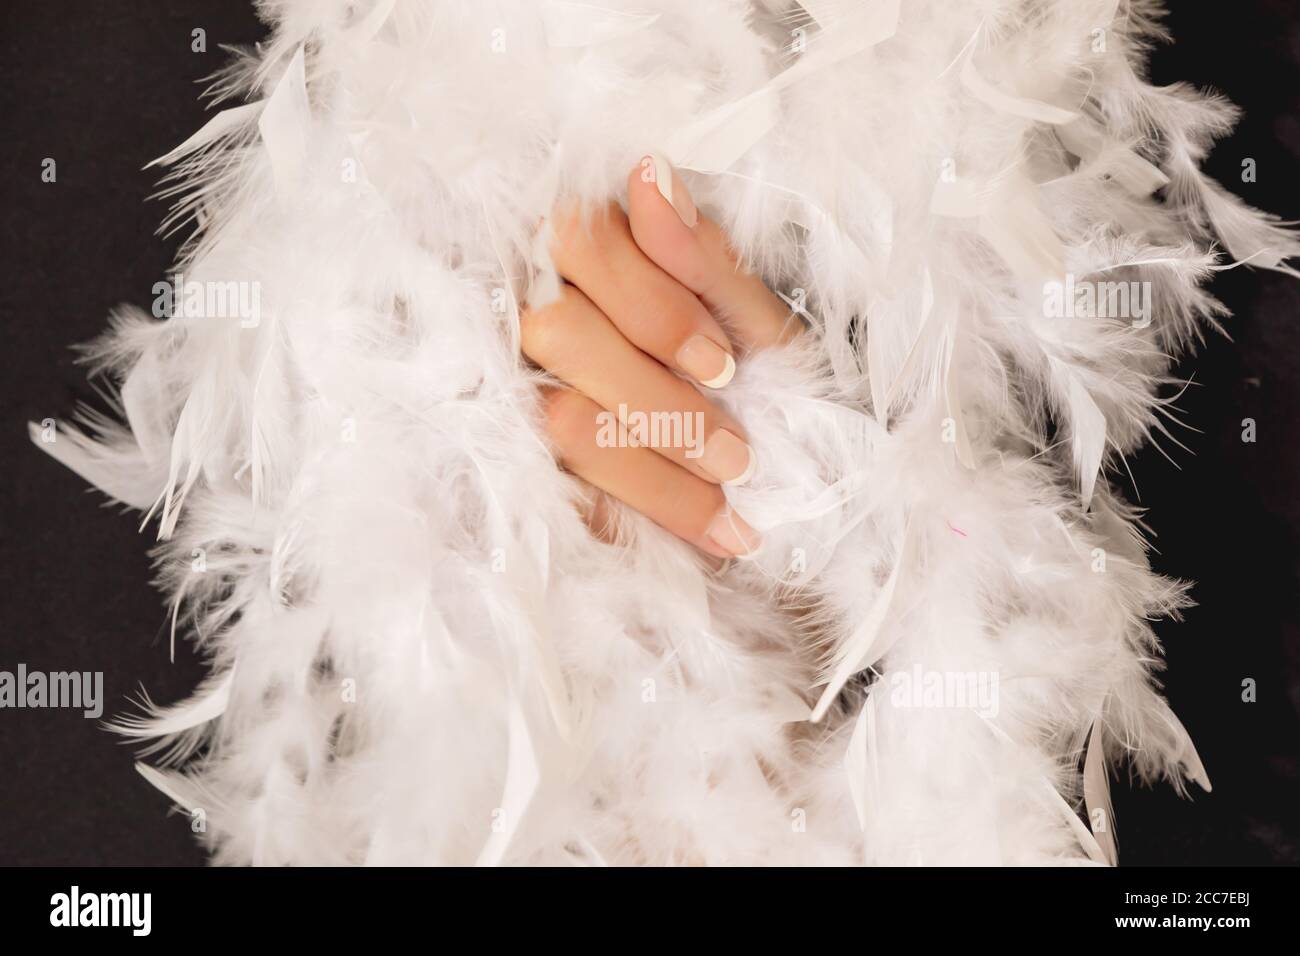 Une main femelle douce entre des plumes blanches douces Banque D'Images